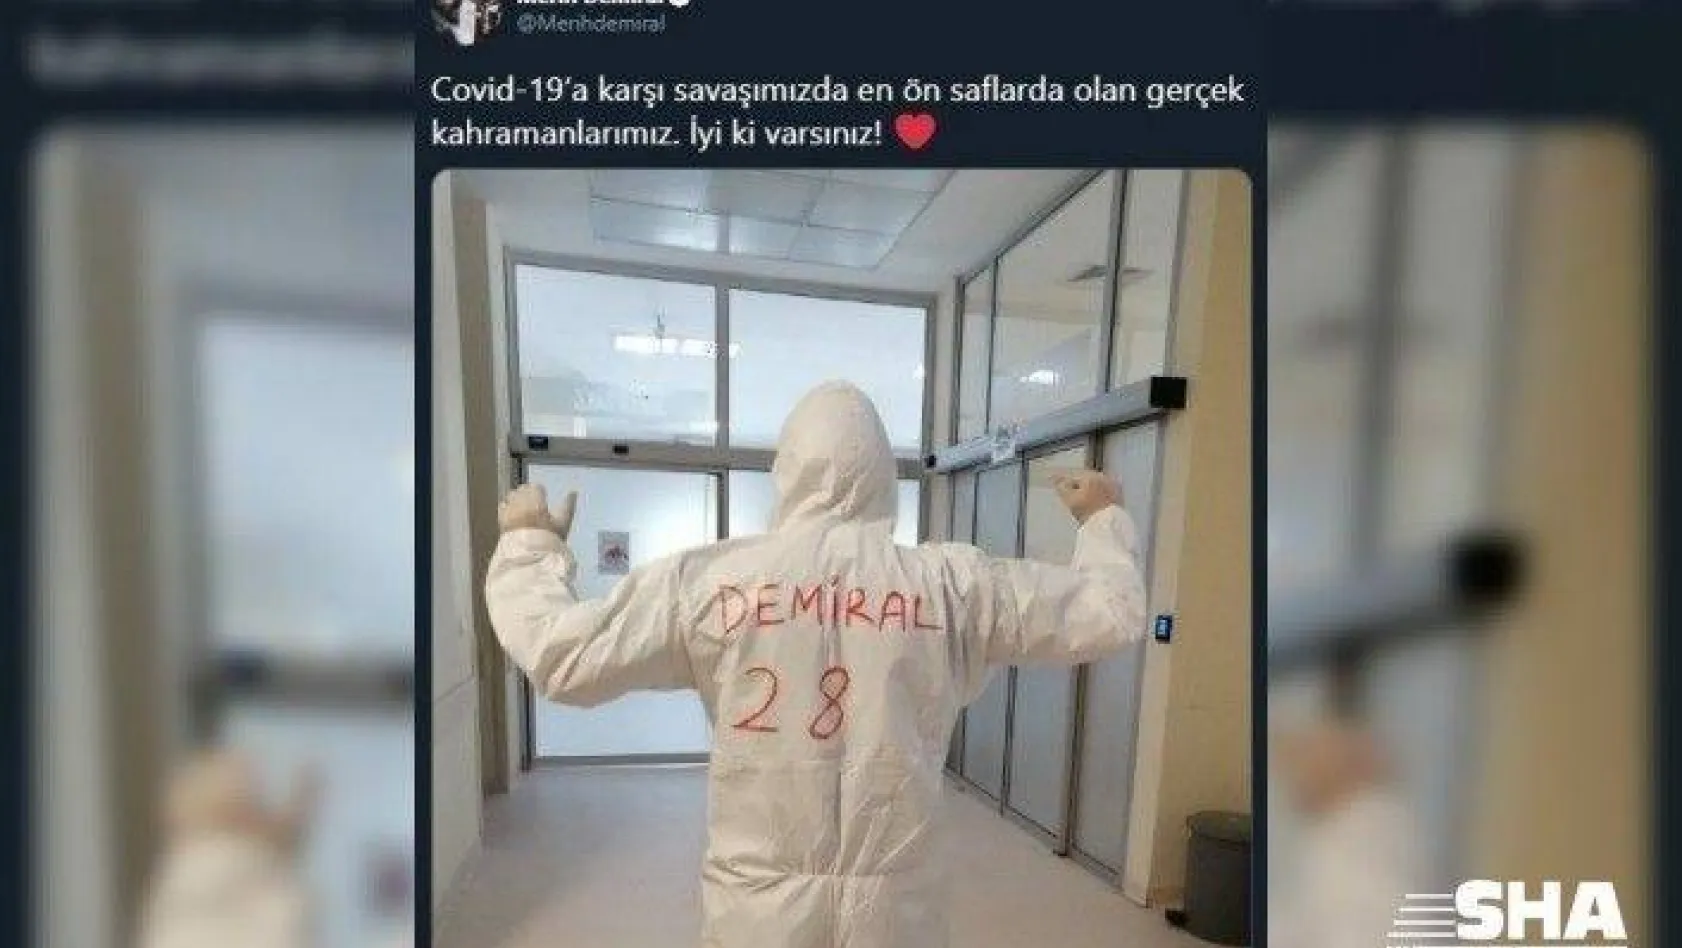 Milli futbolcu Merih Demiral'dan sağlık çalışanlarına destek